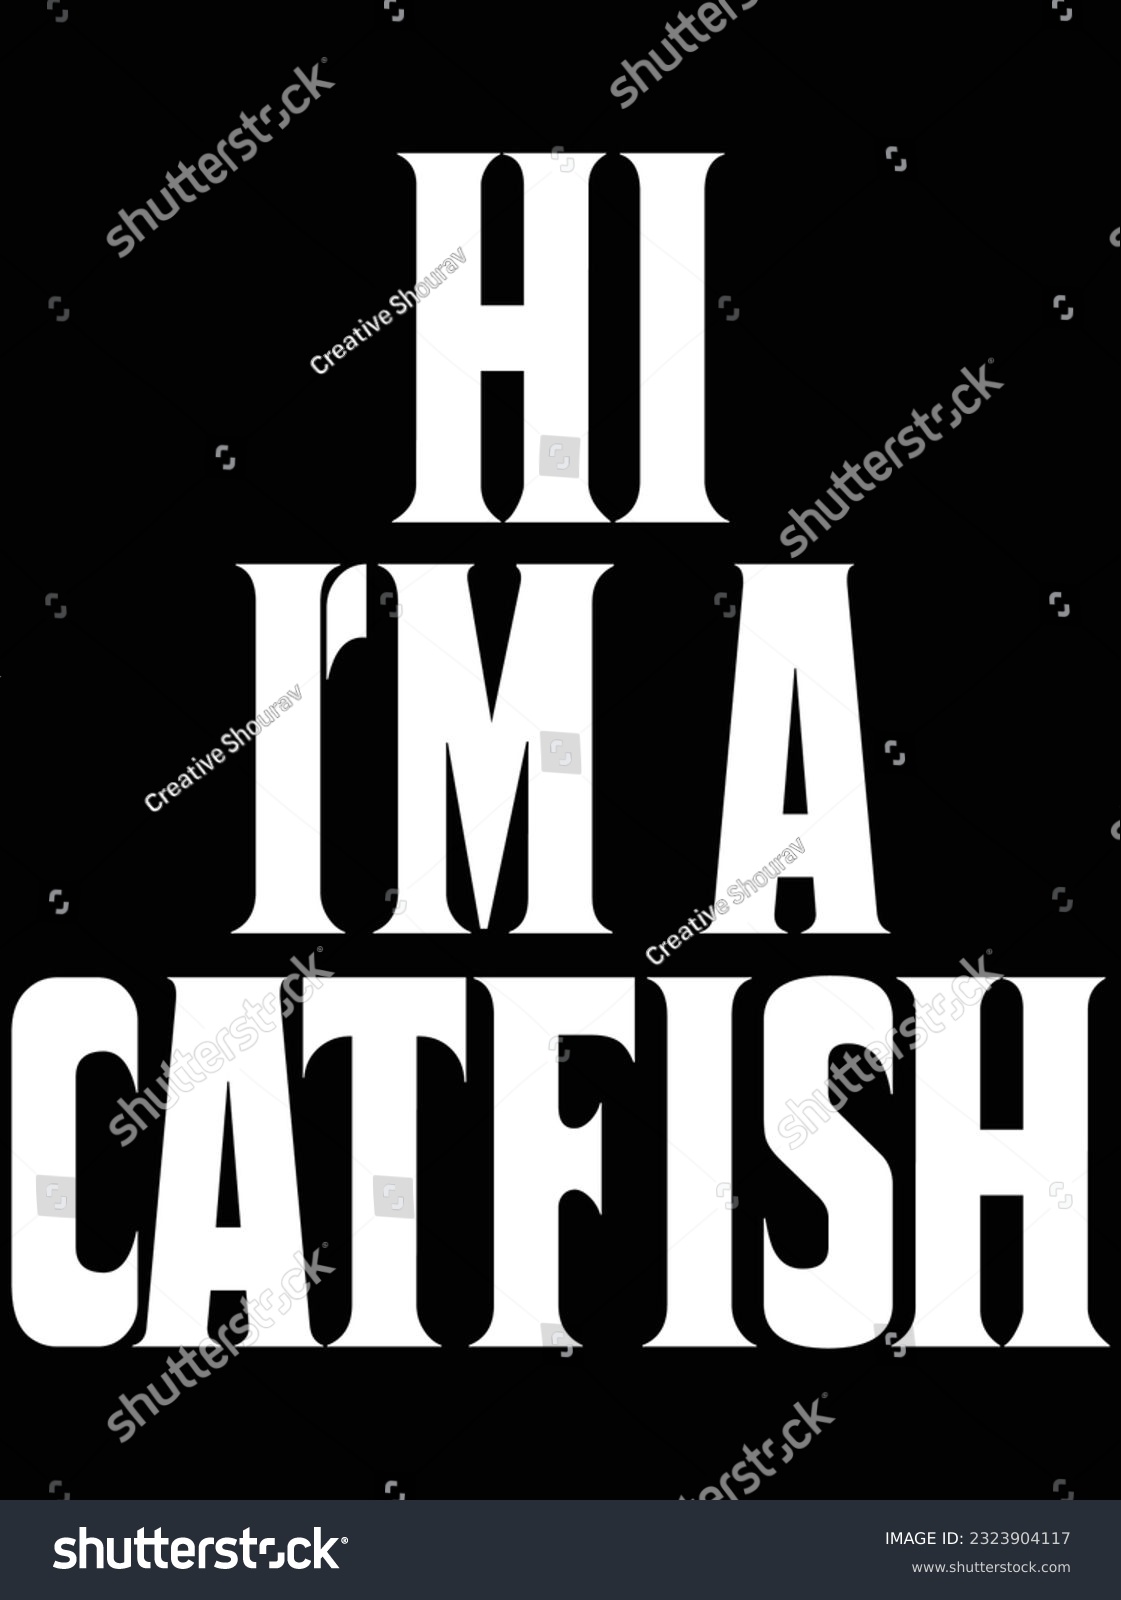 SVG of Hi I'm a catfish vector art design, eps file. design file for t-shirt. SVG, EPS cuttable design file svg